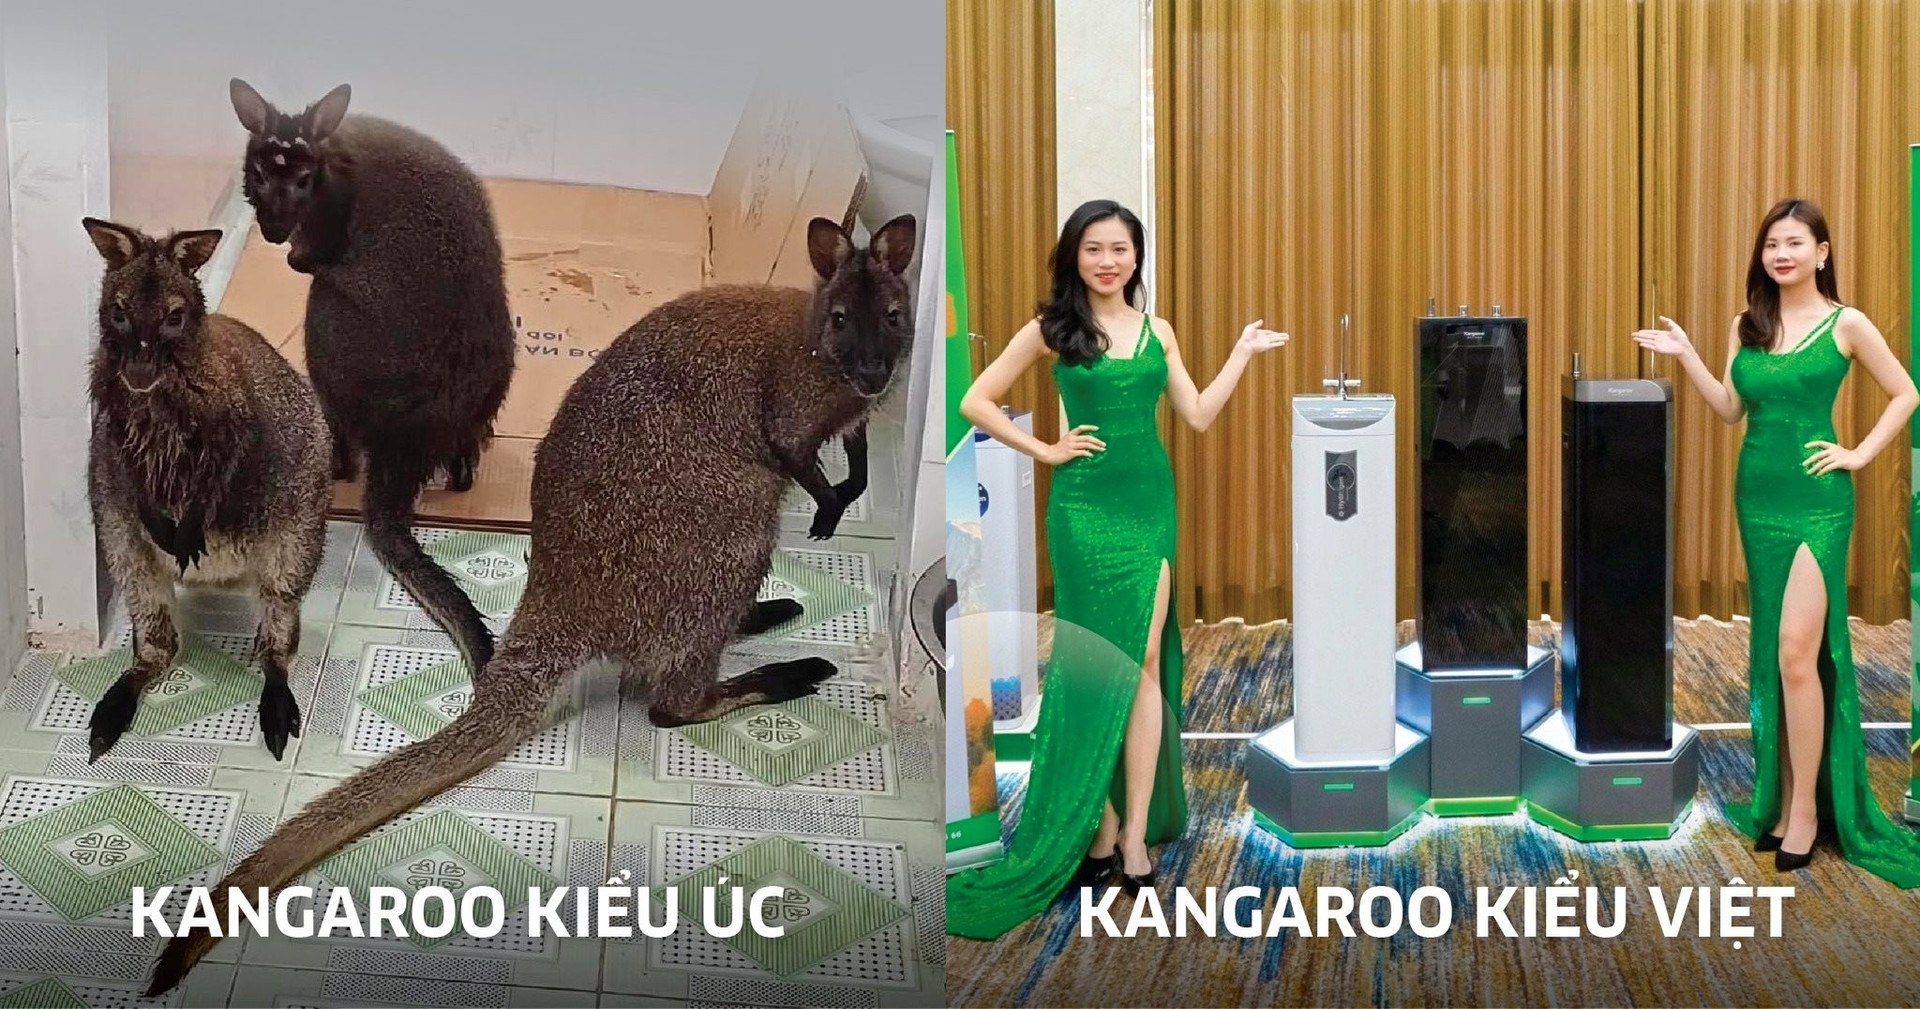 Chi tiền chăm sóc 4 chú kangaroo bị 'lạc', Tập đoàn Kangaroo tranh thủ quảng cáo gây bão trên fanpage, khoe nhà máy lọc nước 6.000 tỷ đồng lớn nhất Việt Nam - Ảnh 3.